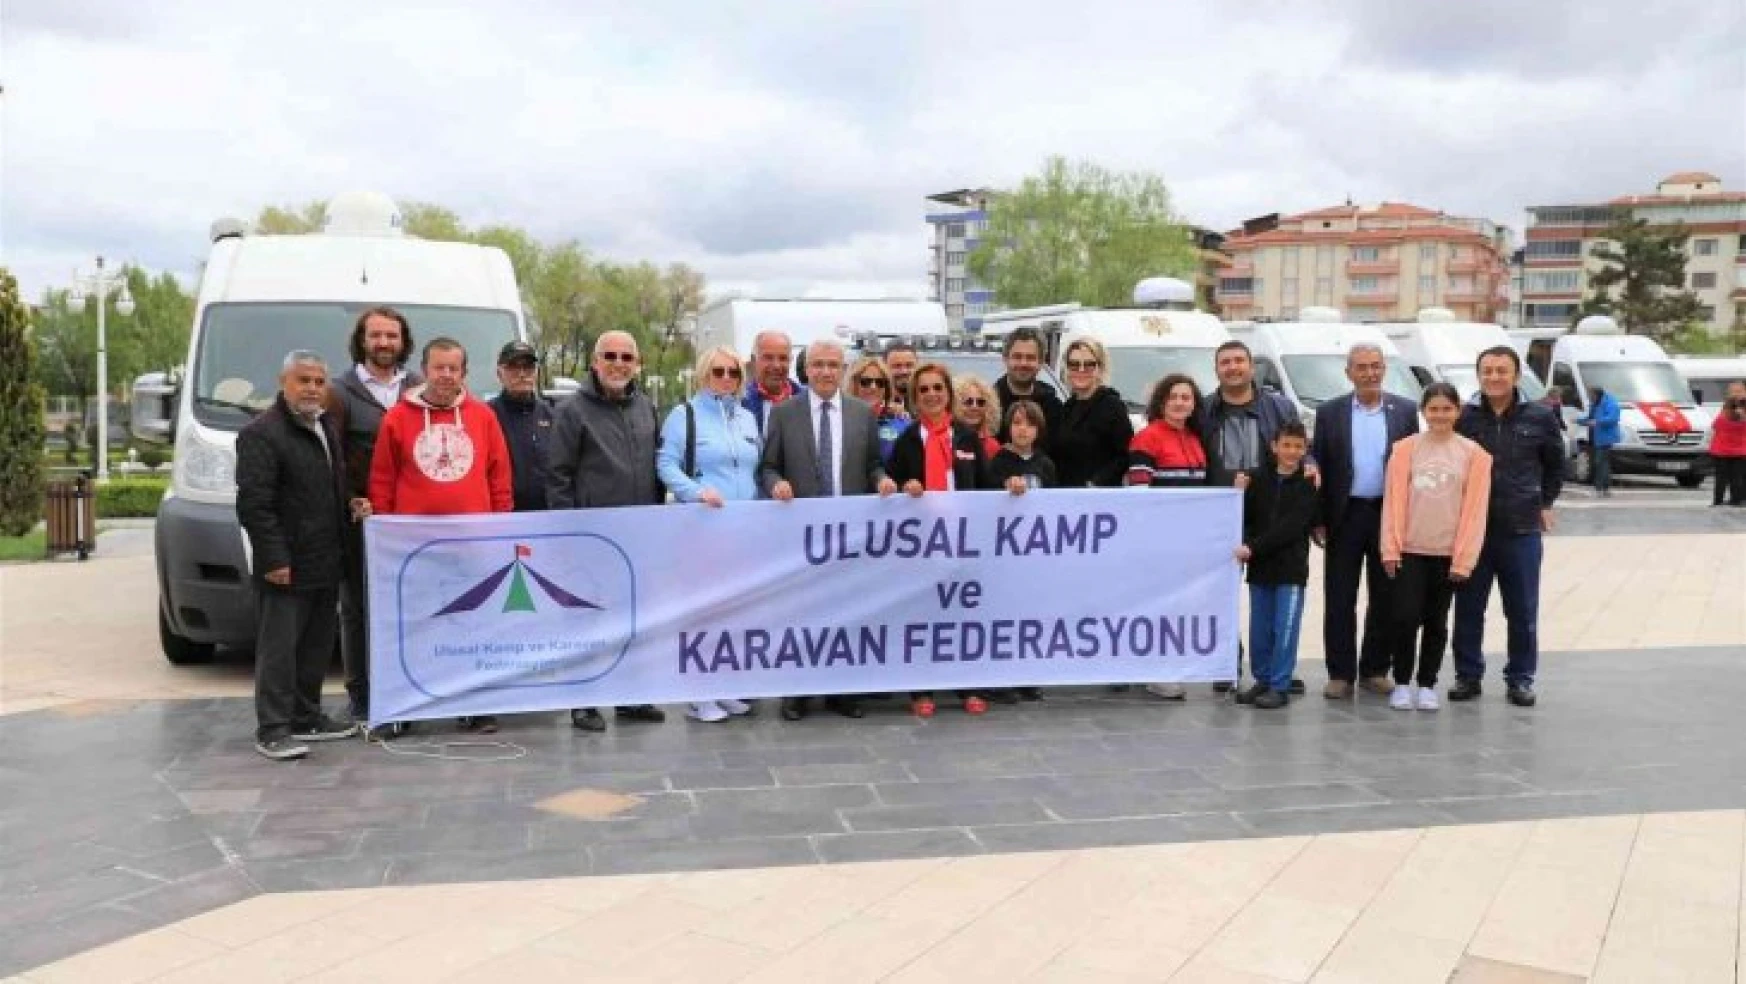 Malatya'da karavan festivali kortej yürüyüşü ile başladı